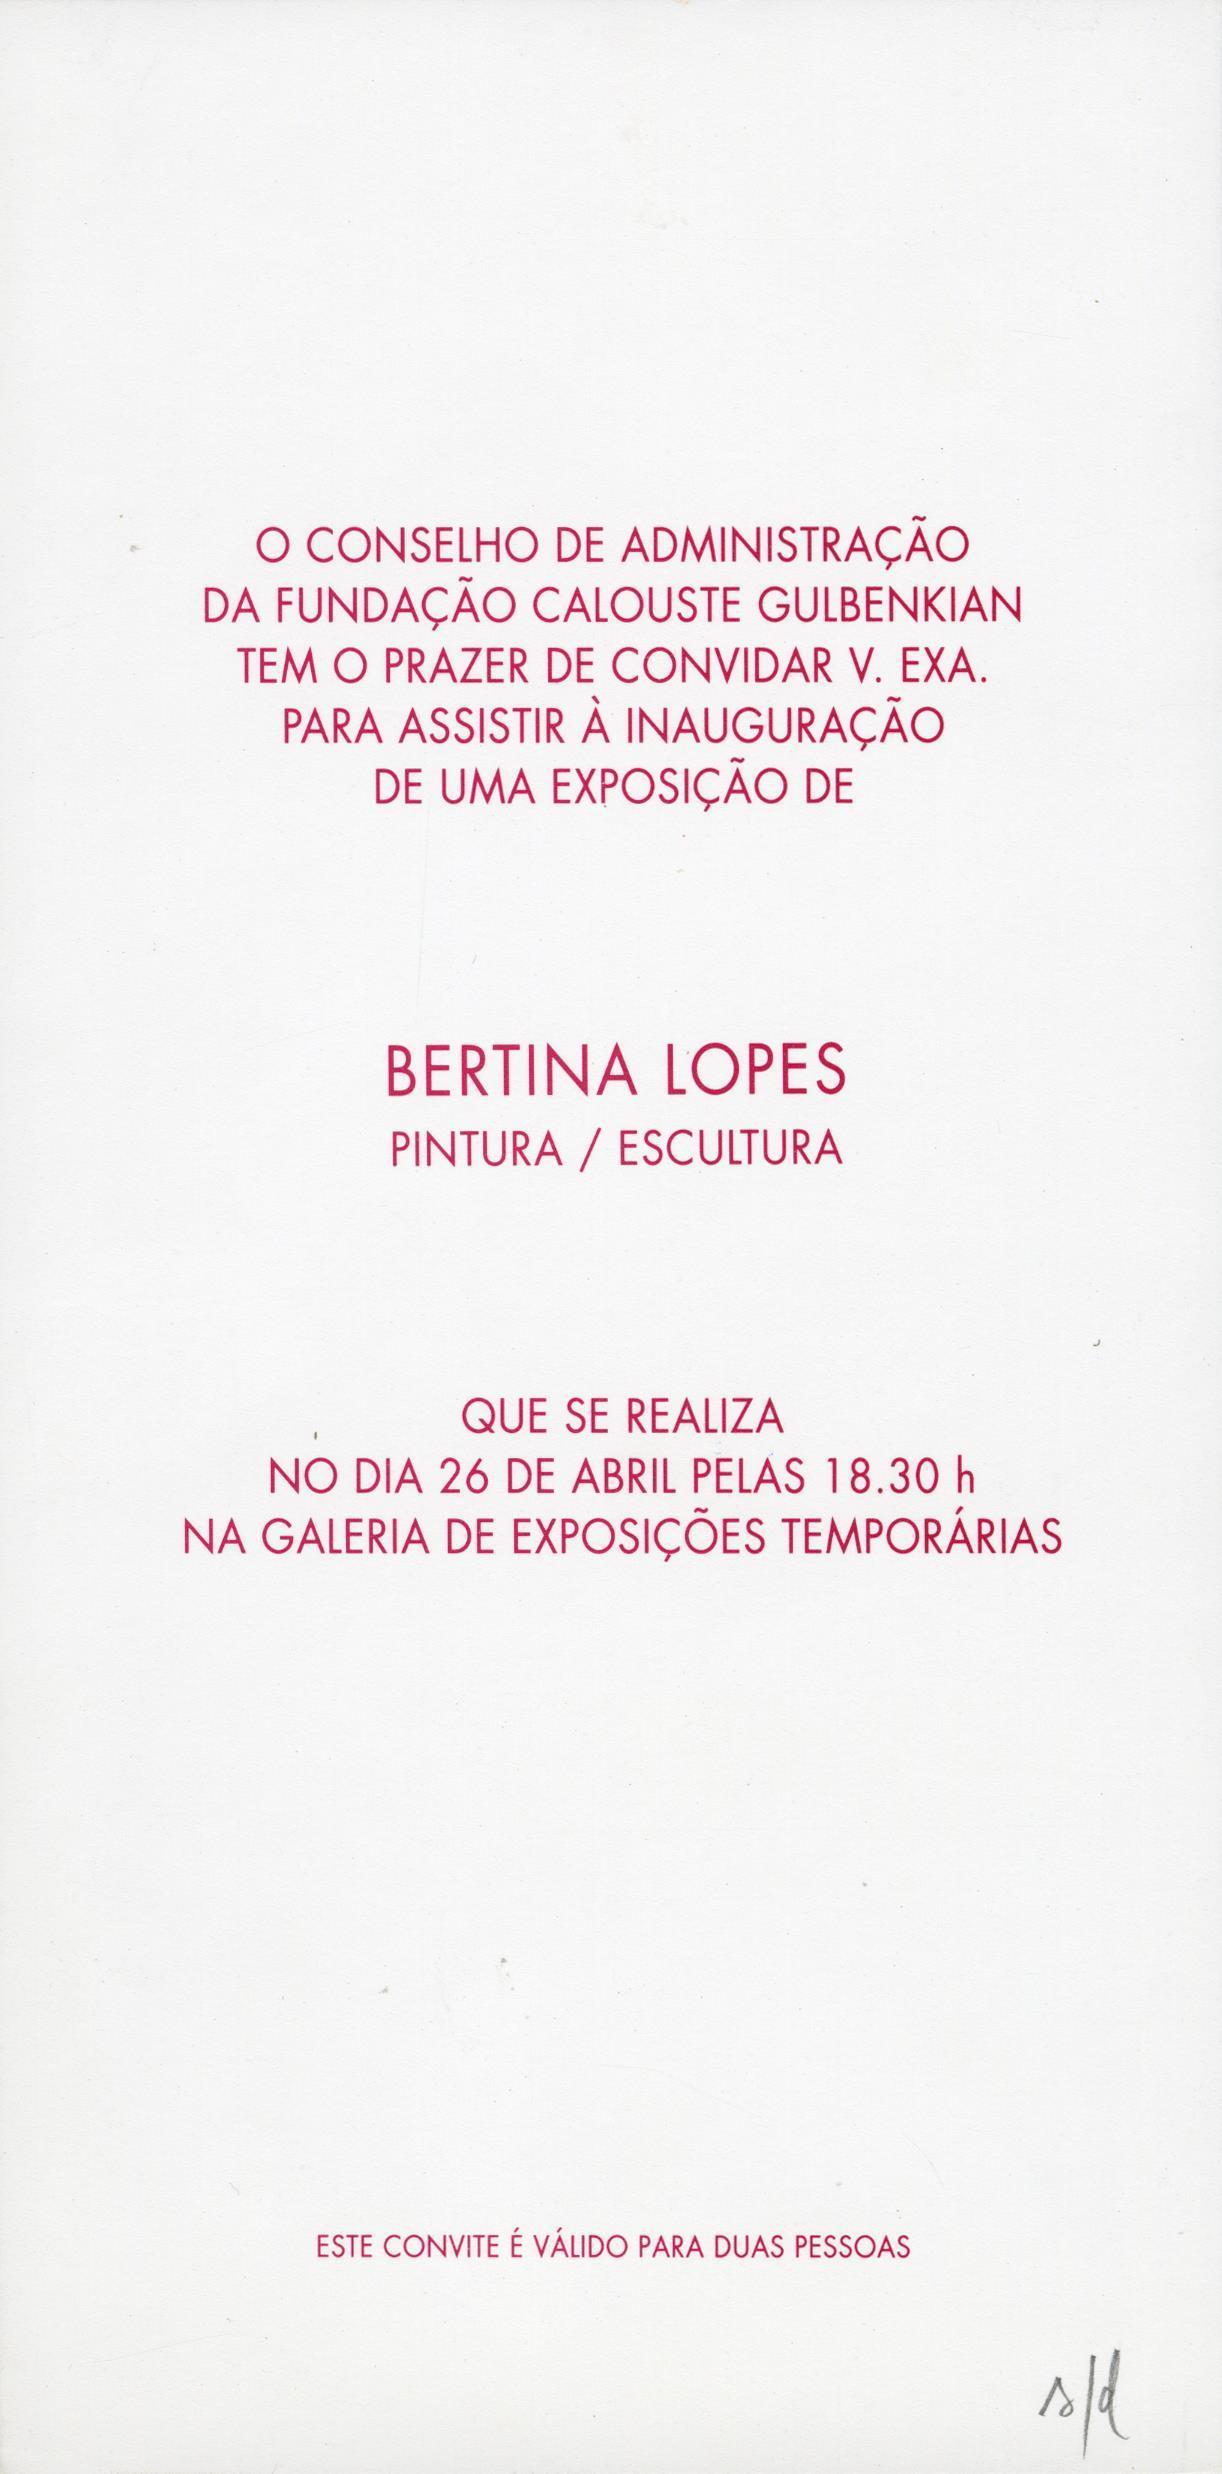 Bertina Lopes. Expressão Artística entre Duas Civilizações